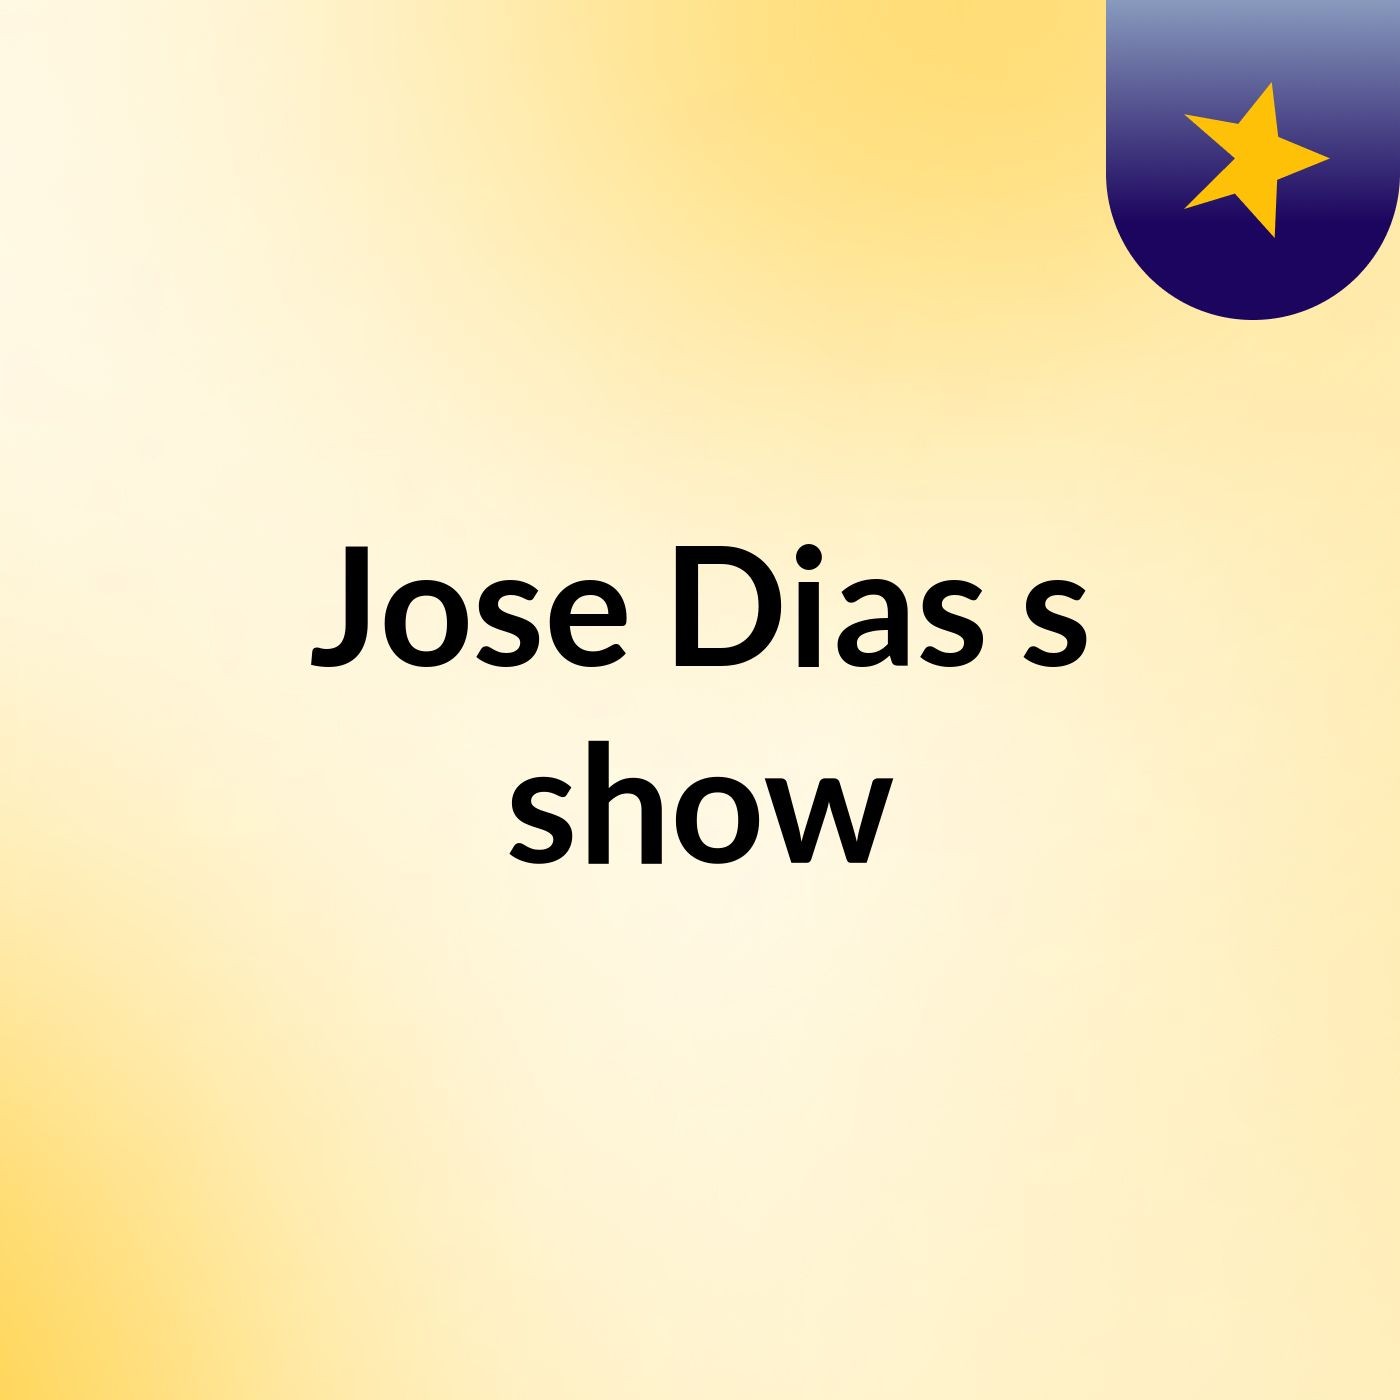 Jose Dias's show